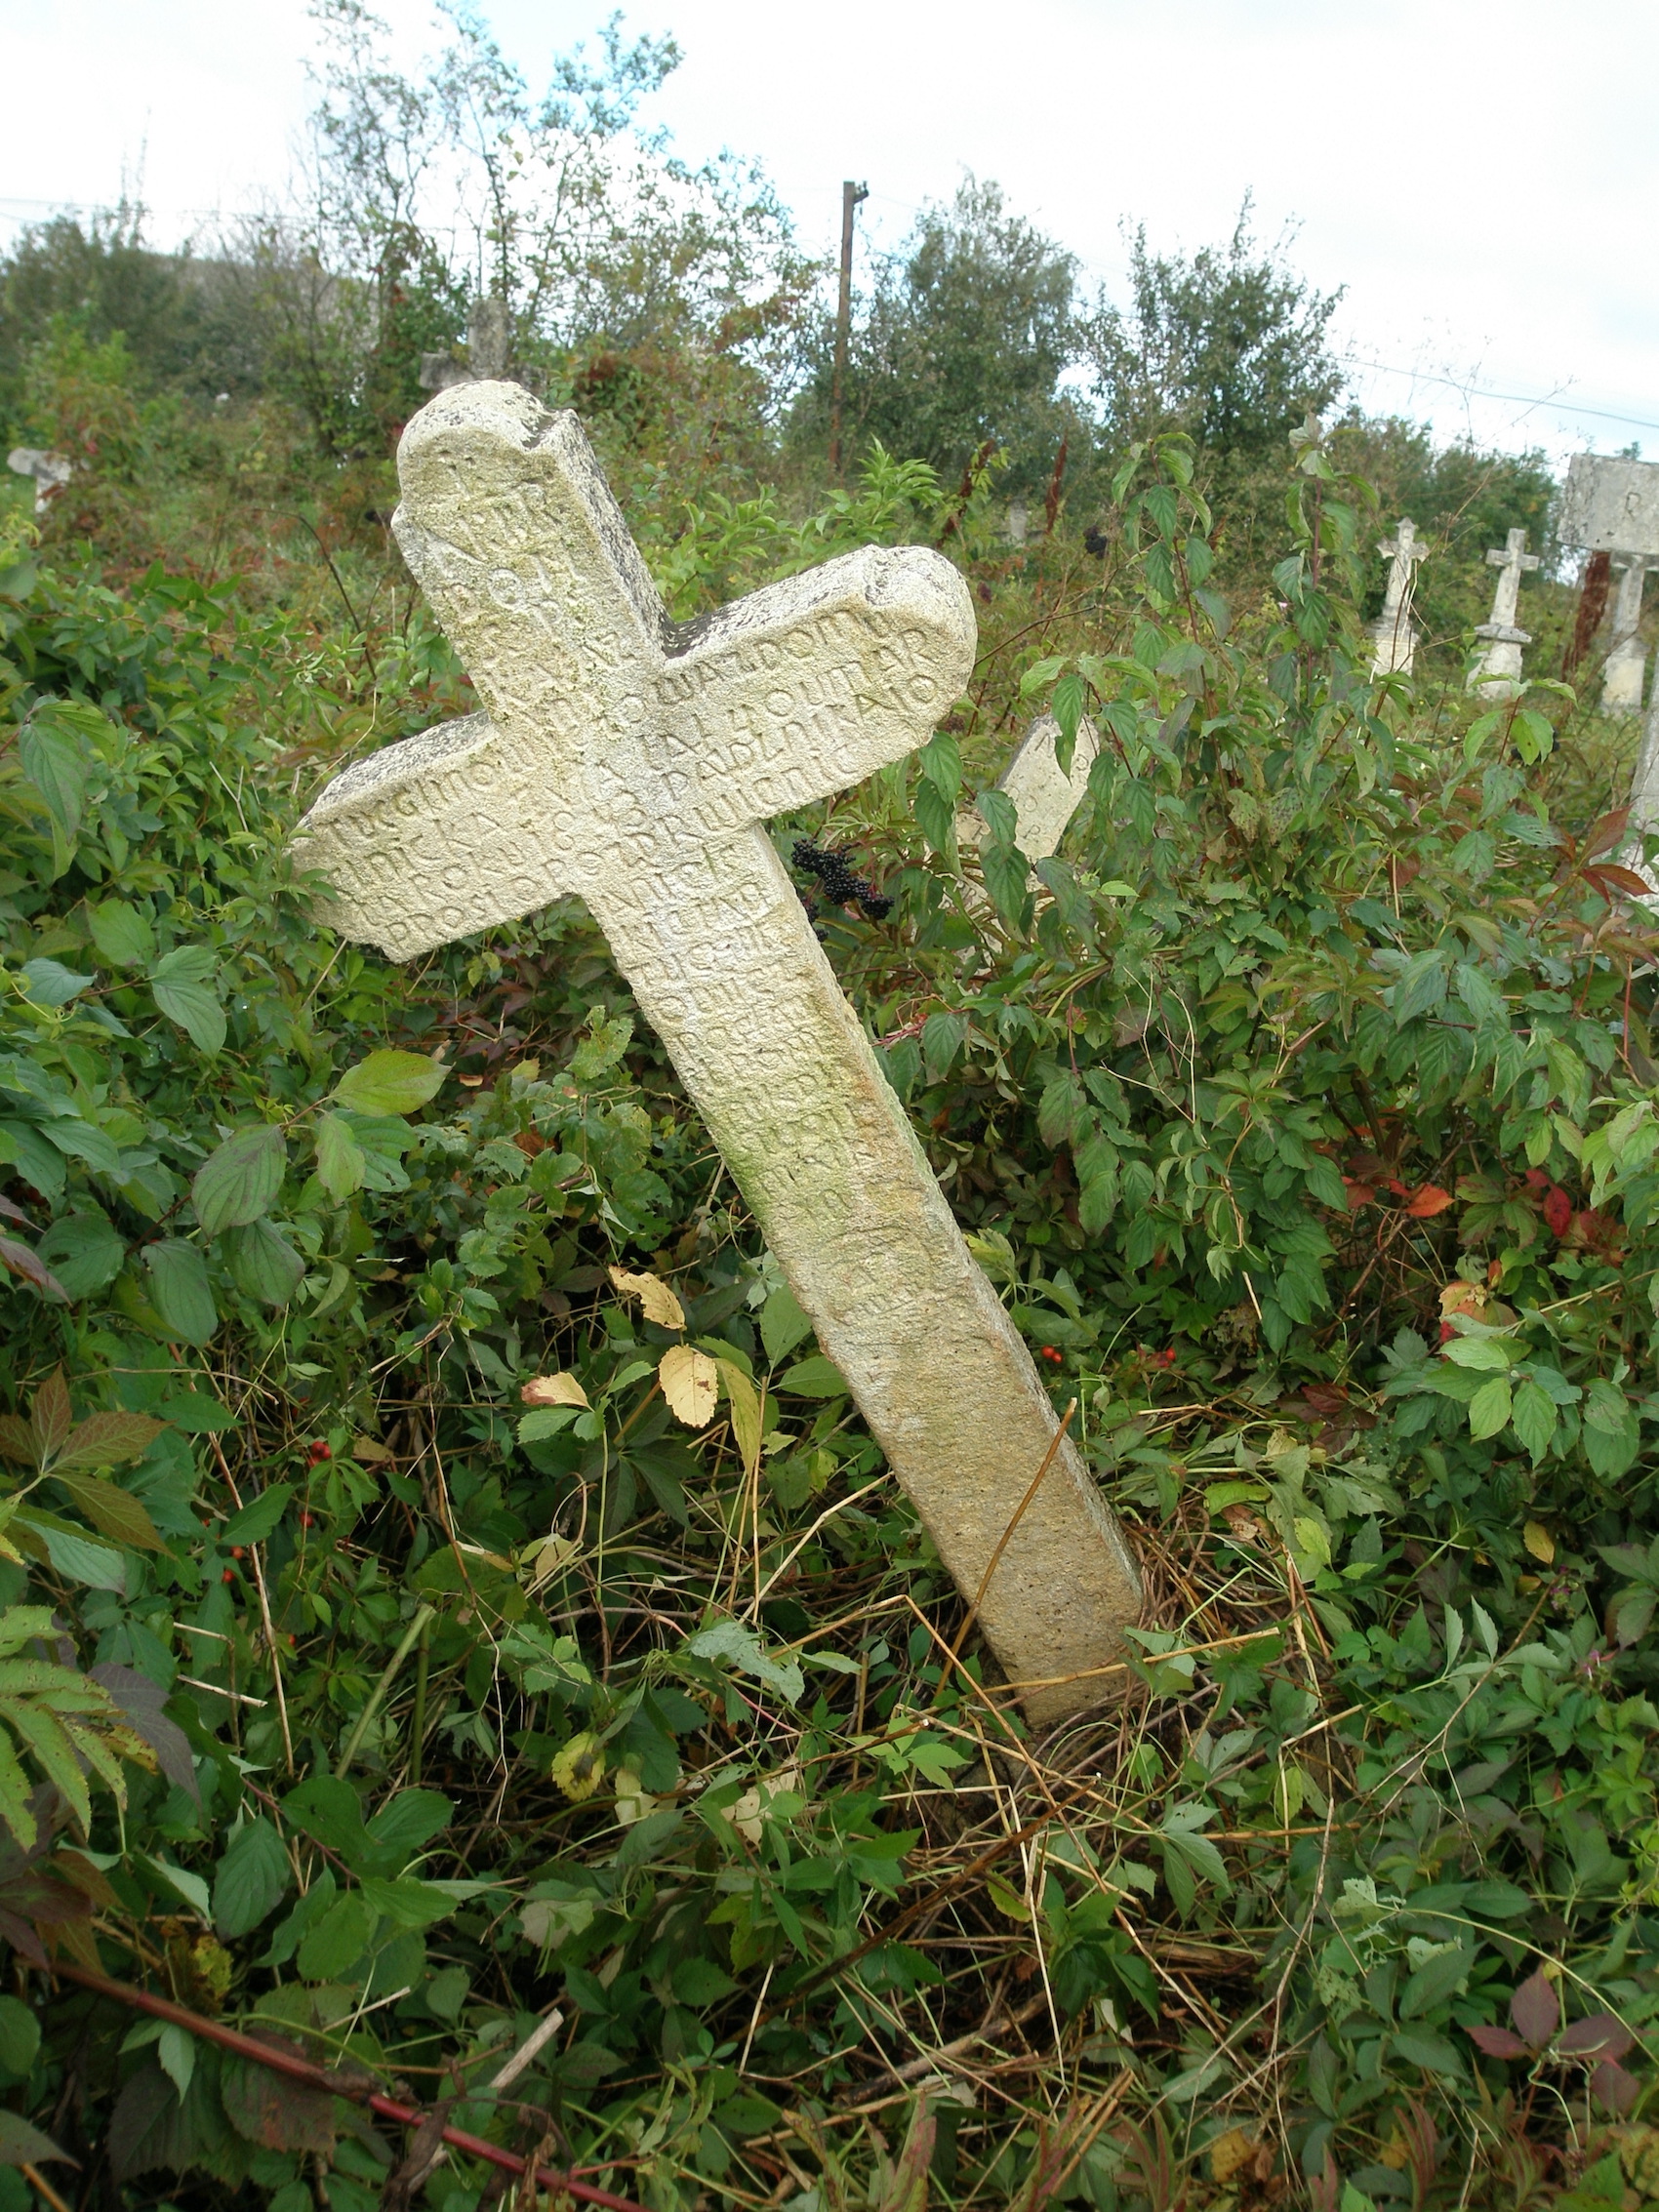 Tombstone of Katarzyna Tuchinowicz, née Selenicka, Jazłowiec cemetery, as of 2006.